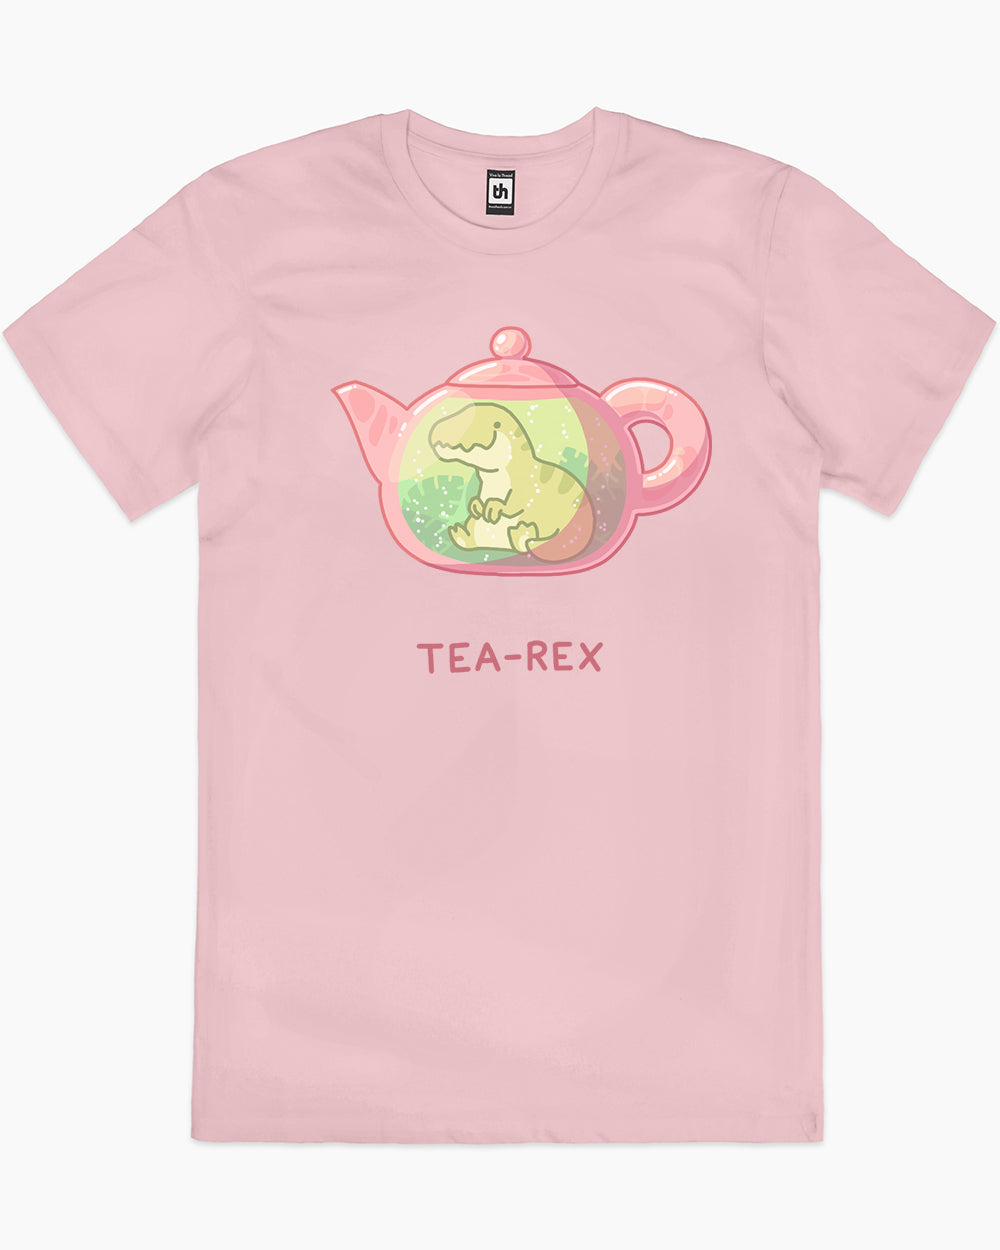 Tea Rex Cute T-Shirt